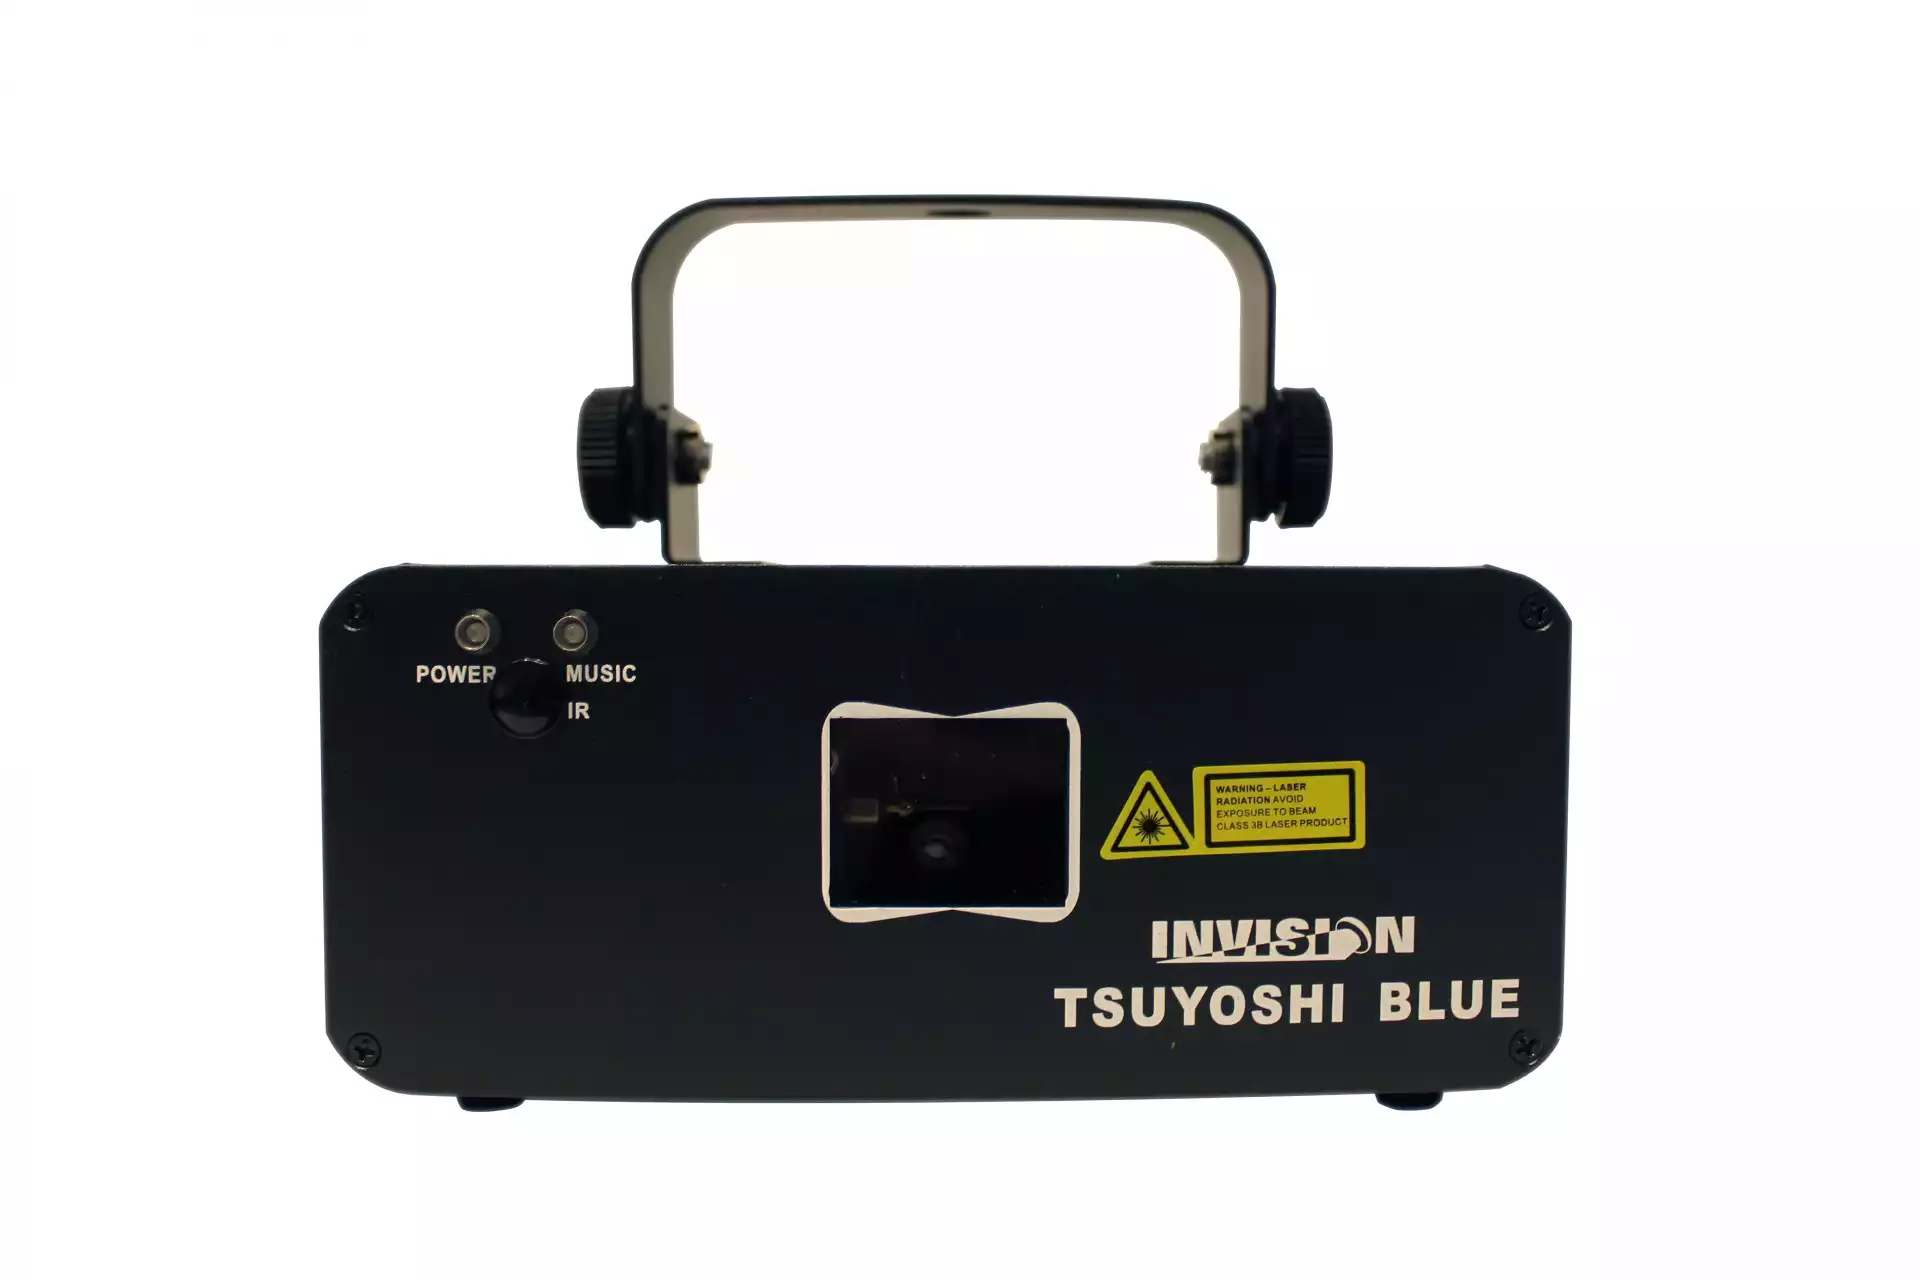 INVISION TSUYOSHI BLUE - Laser